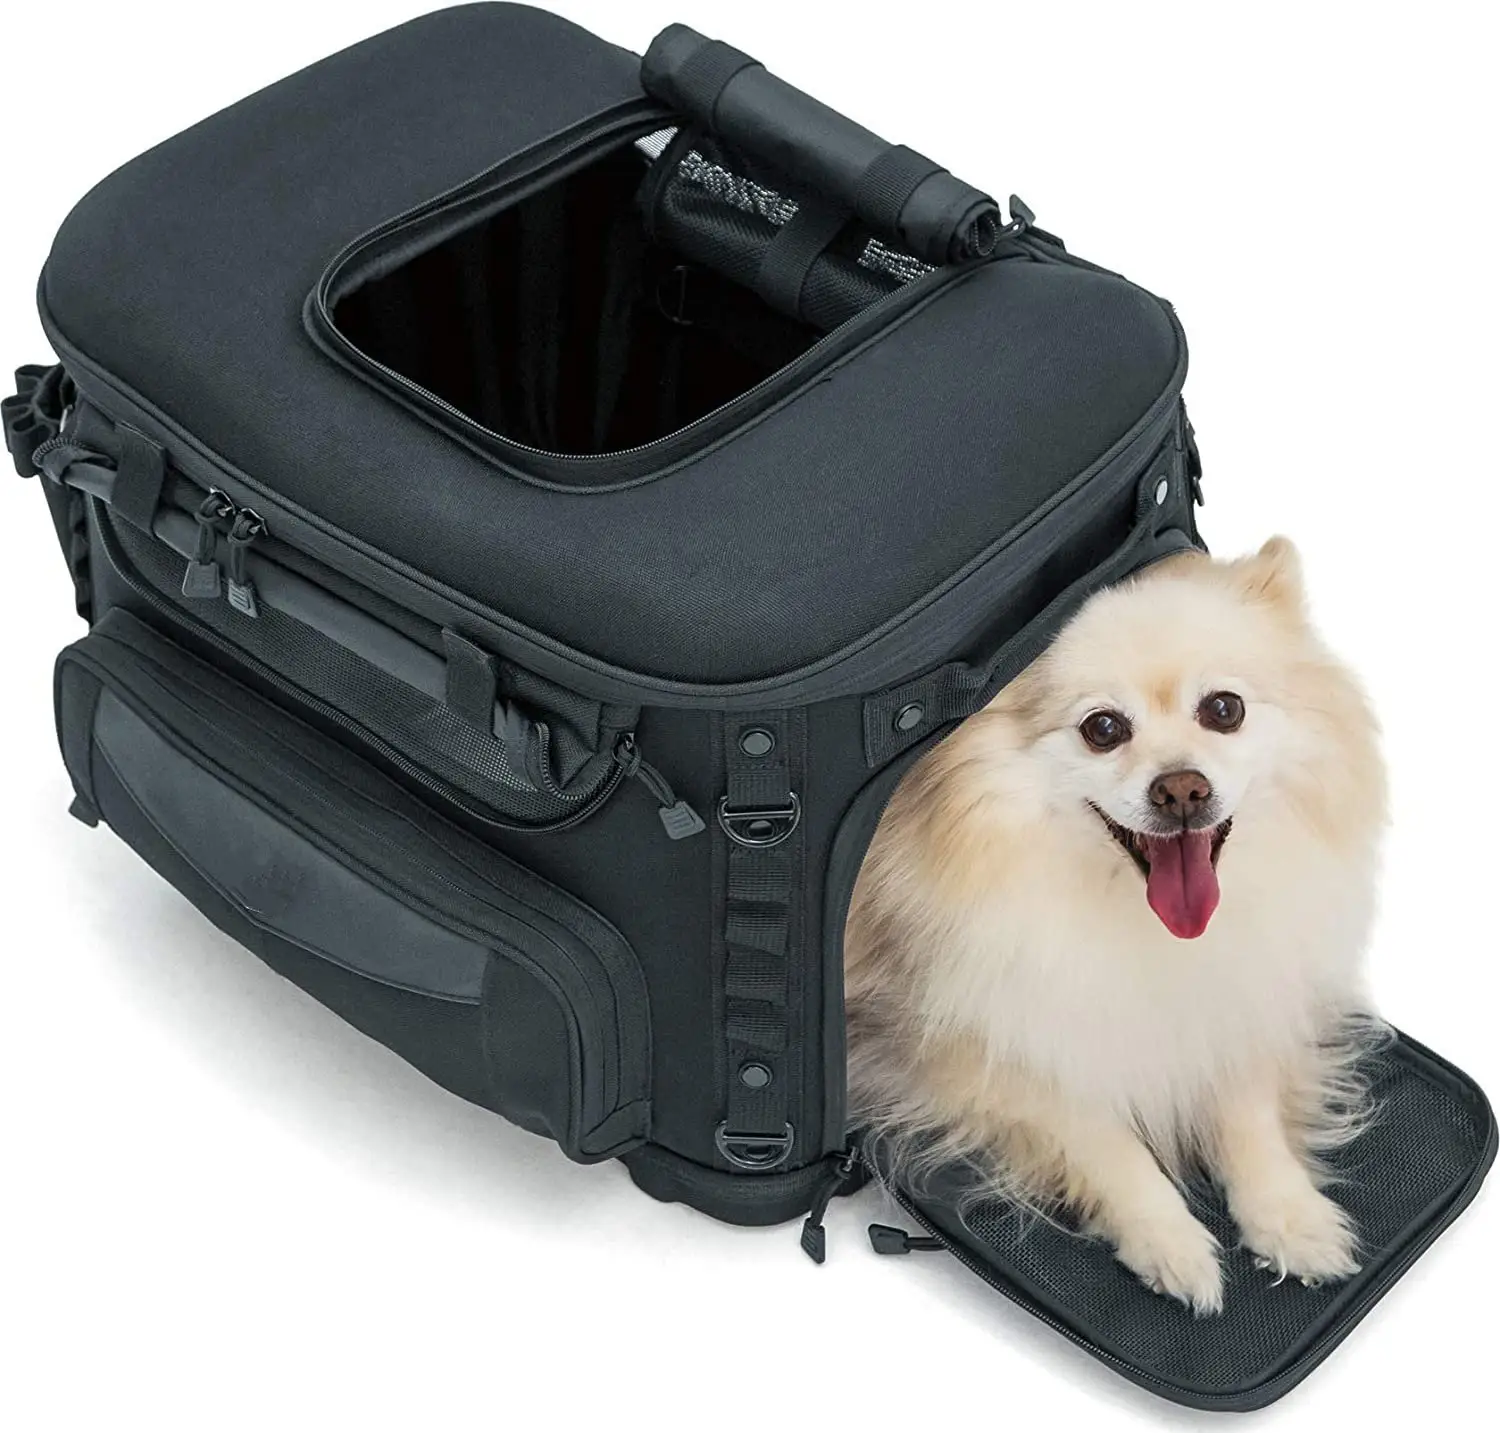 Gratis Sample Draagbare Weerbestendig Motorfiets Hond Kat Carrier Krat Voor Bagage Rack Of Passenger Seat